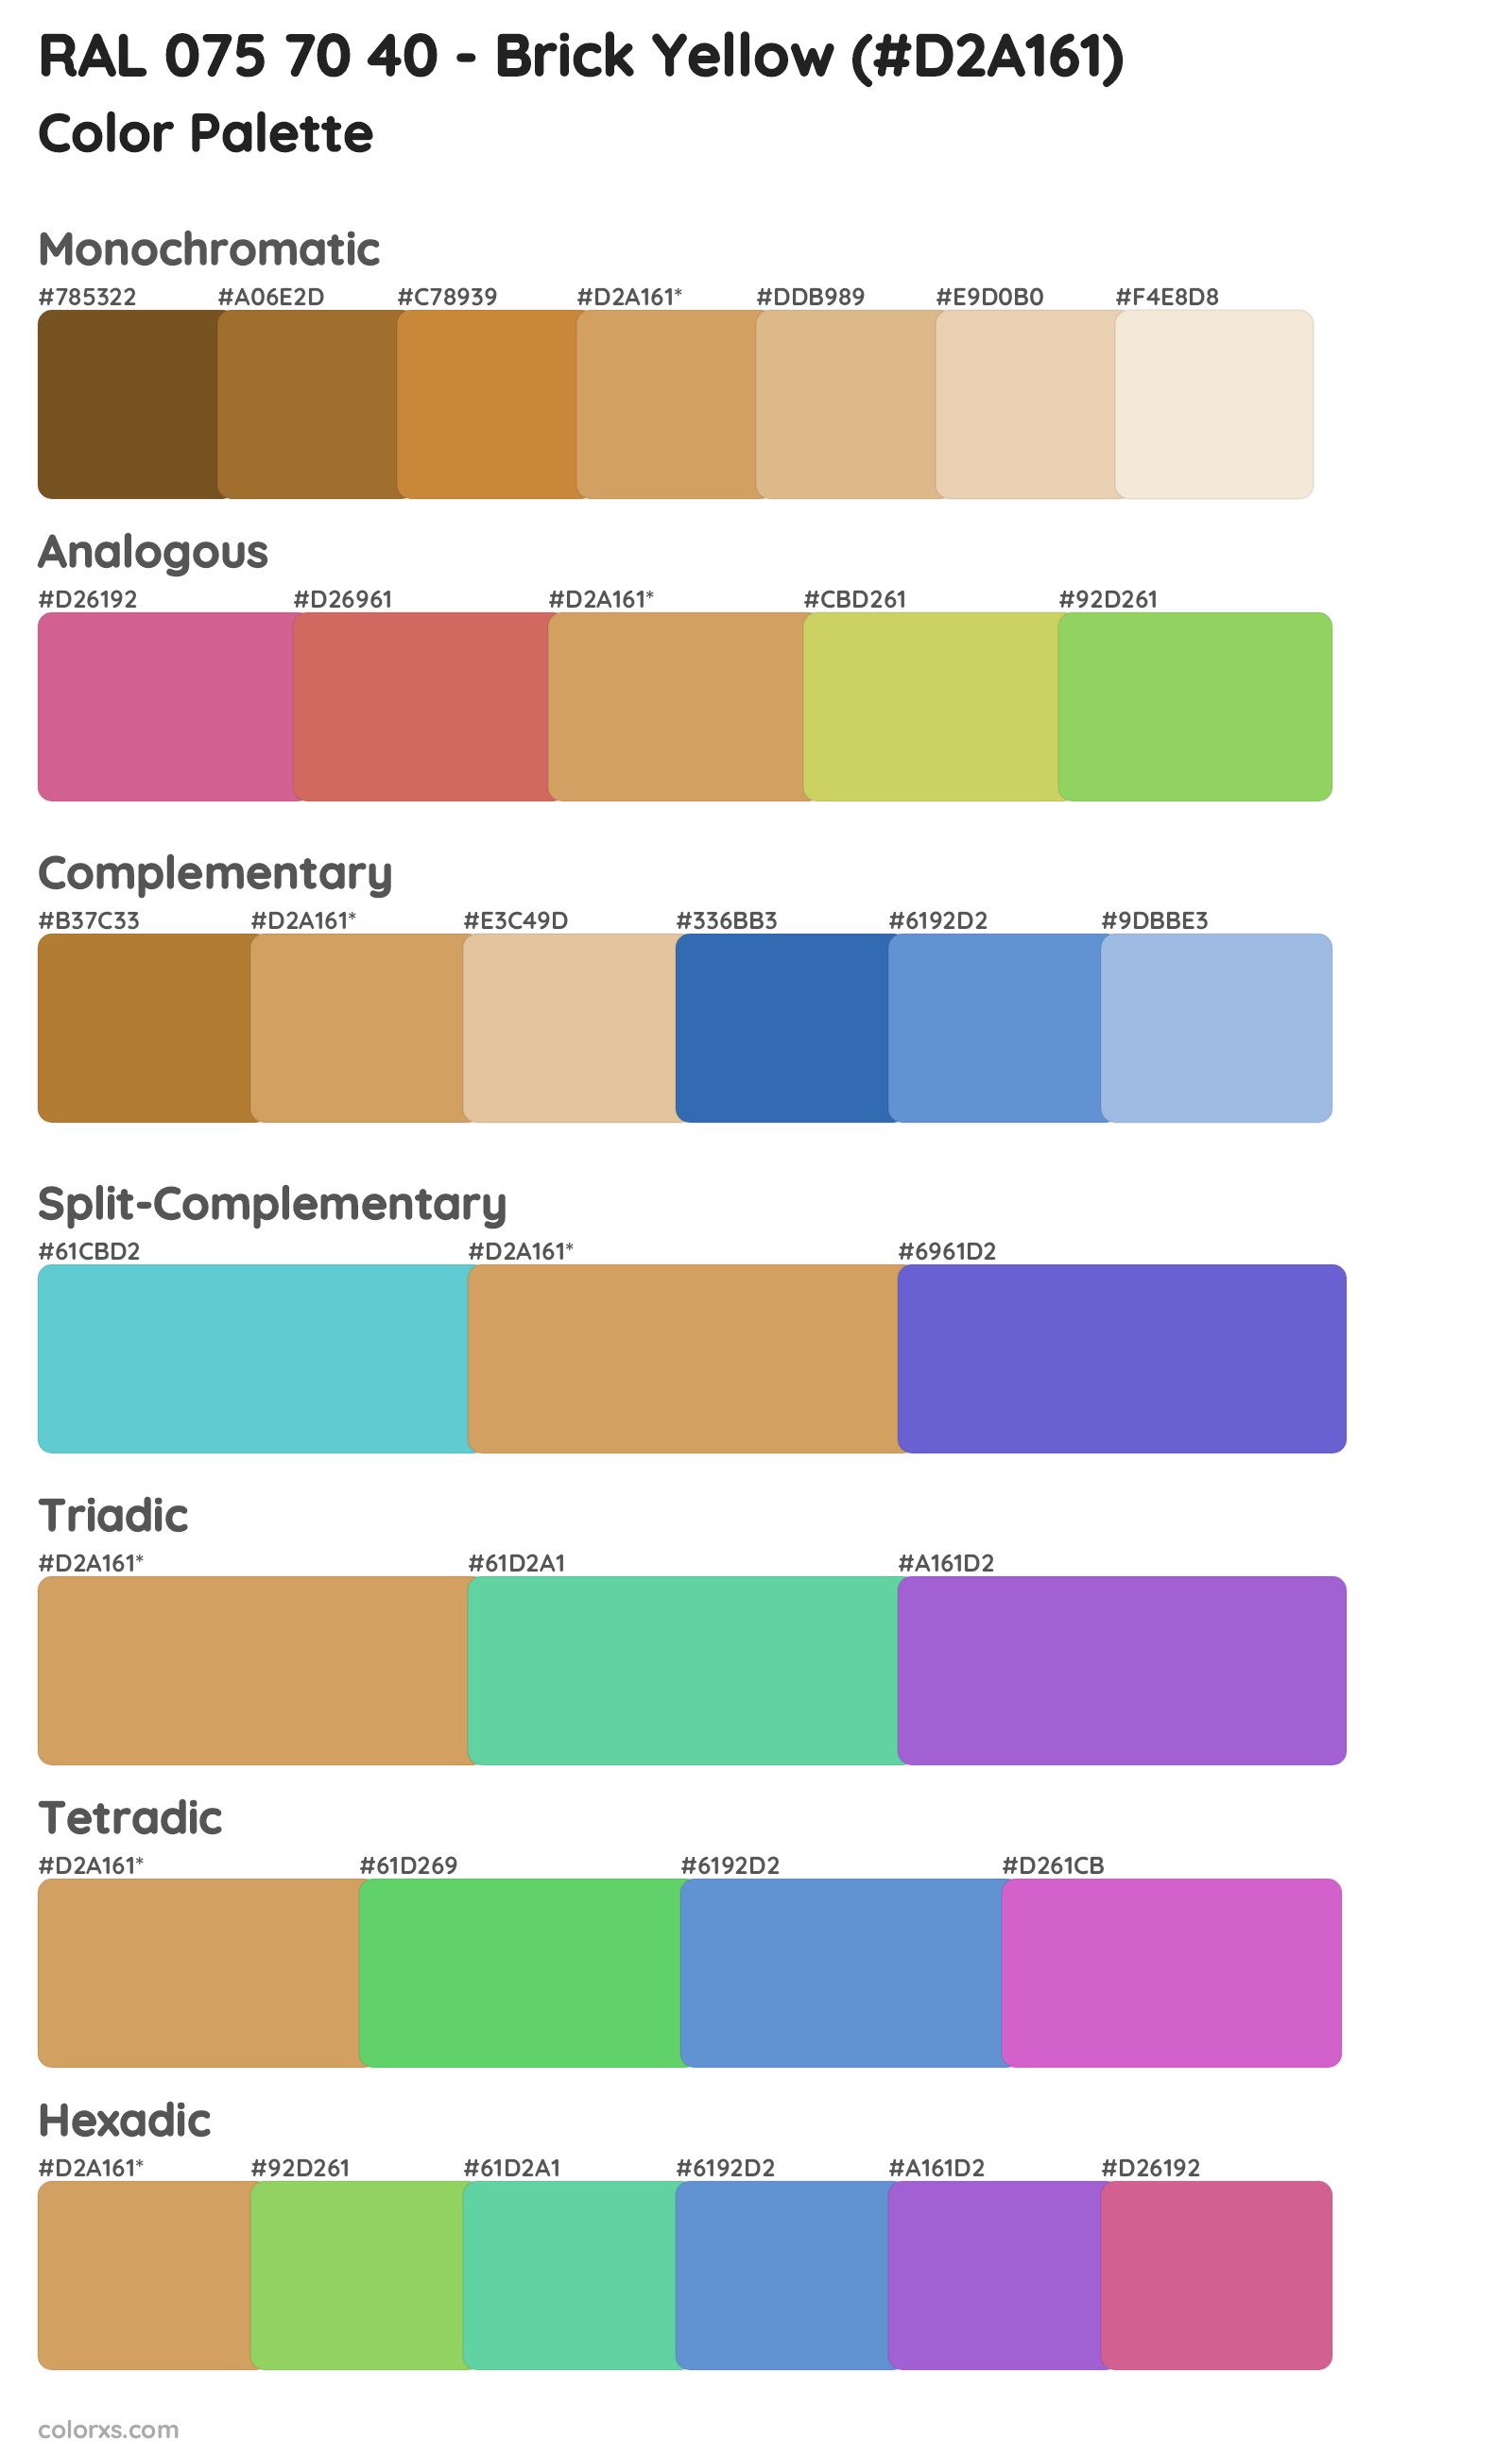 RAL 075 70 40 - Brick Yellow Color Scheme Palettes